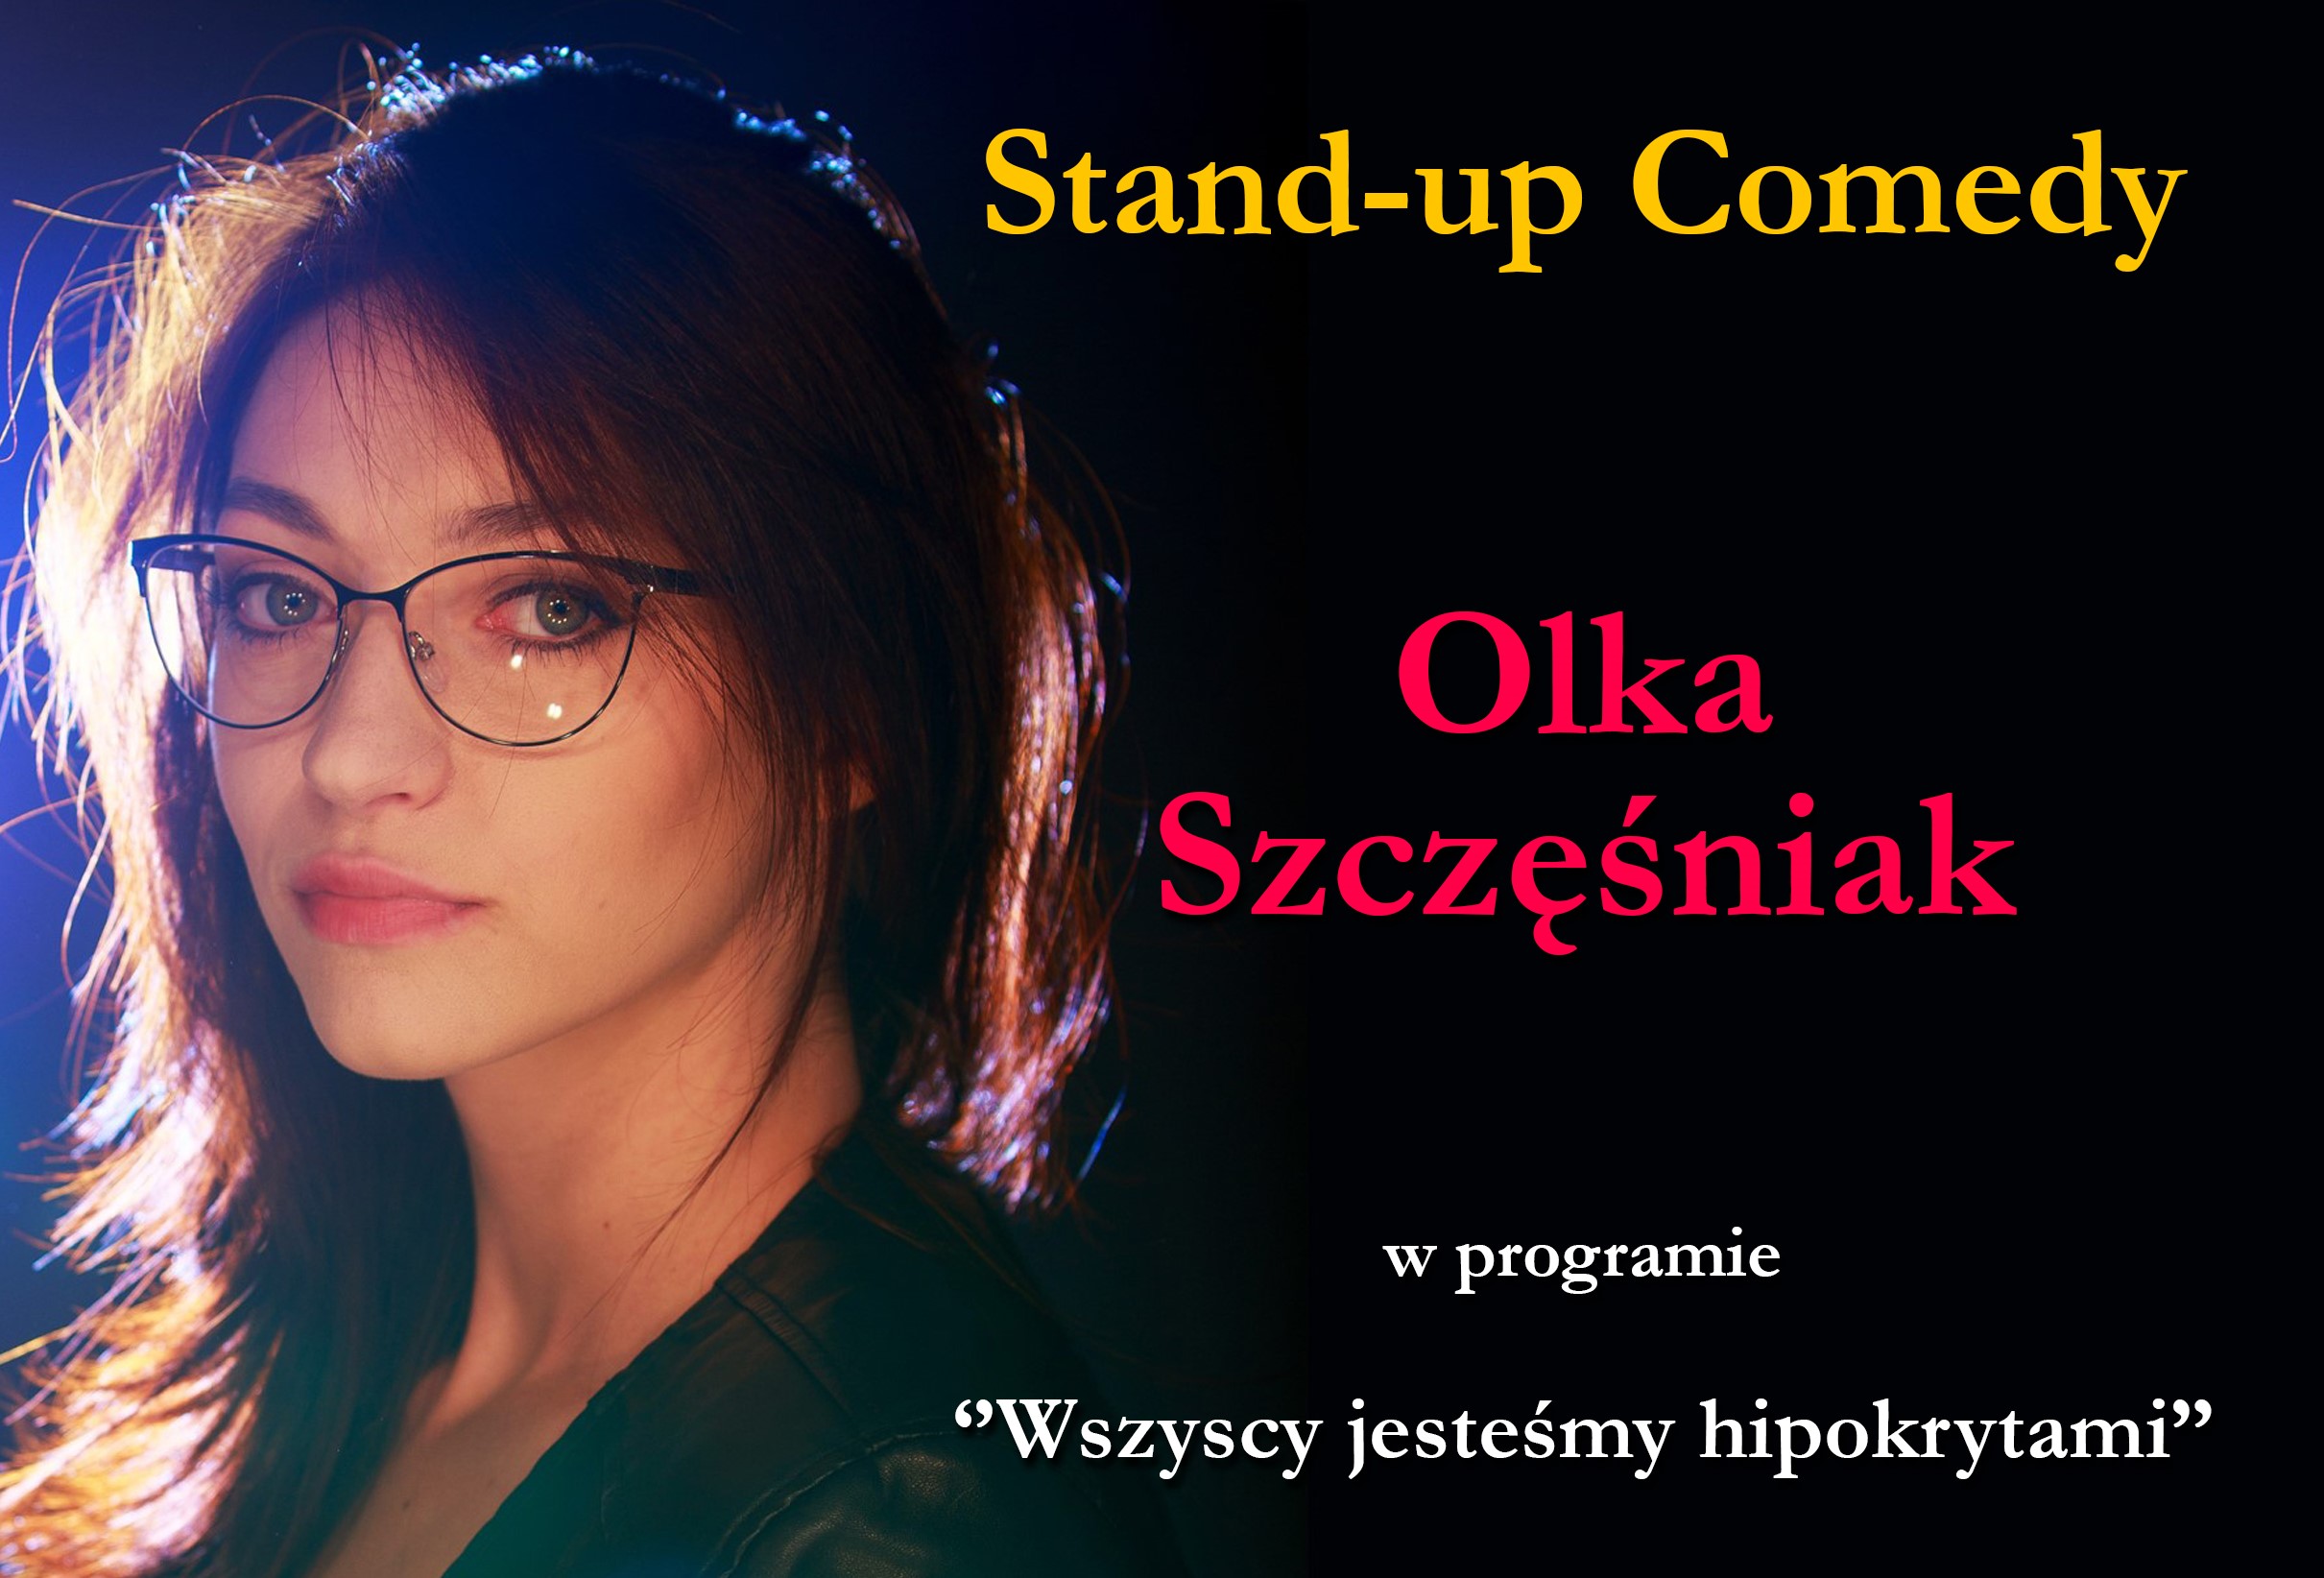 Olka Szczęśniak – stand-up comedy